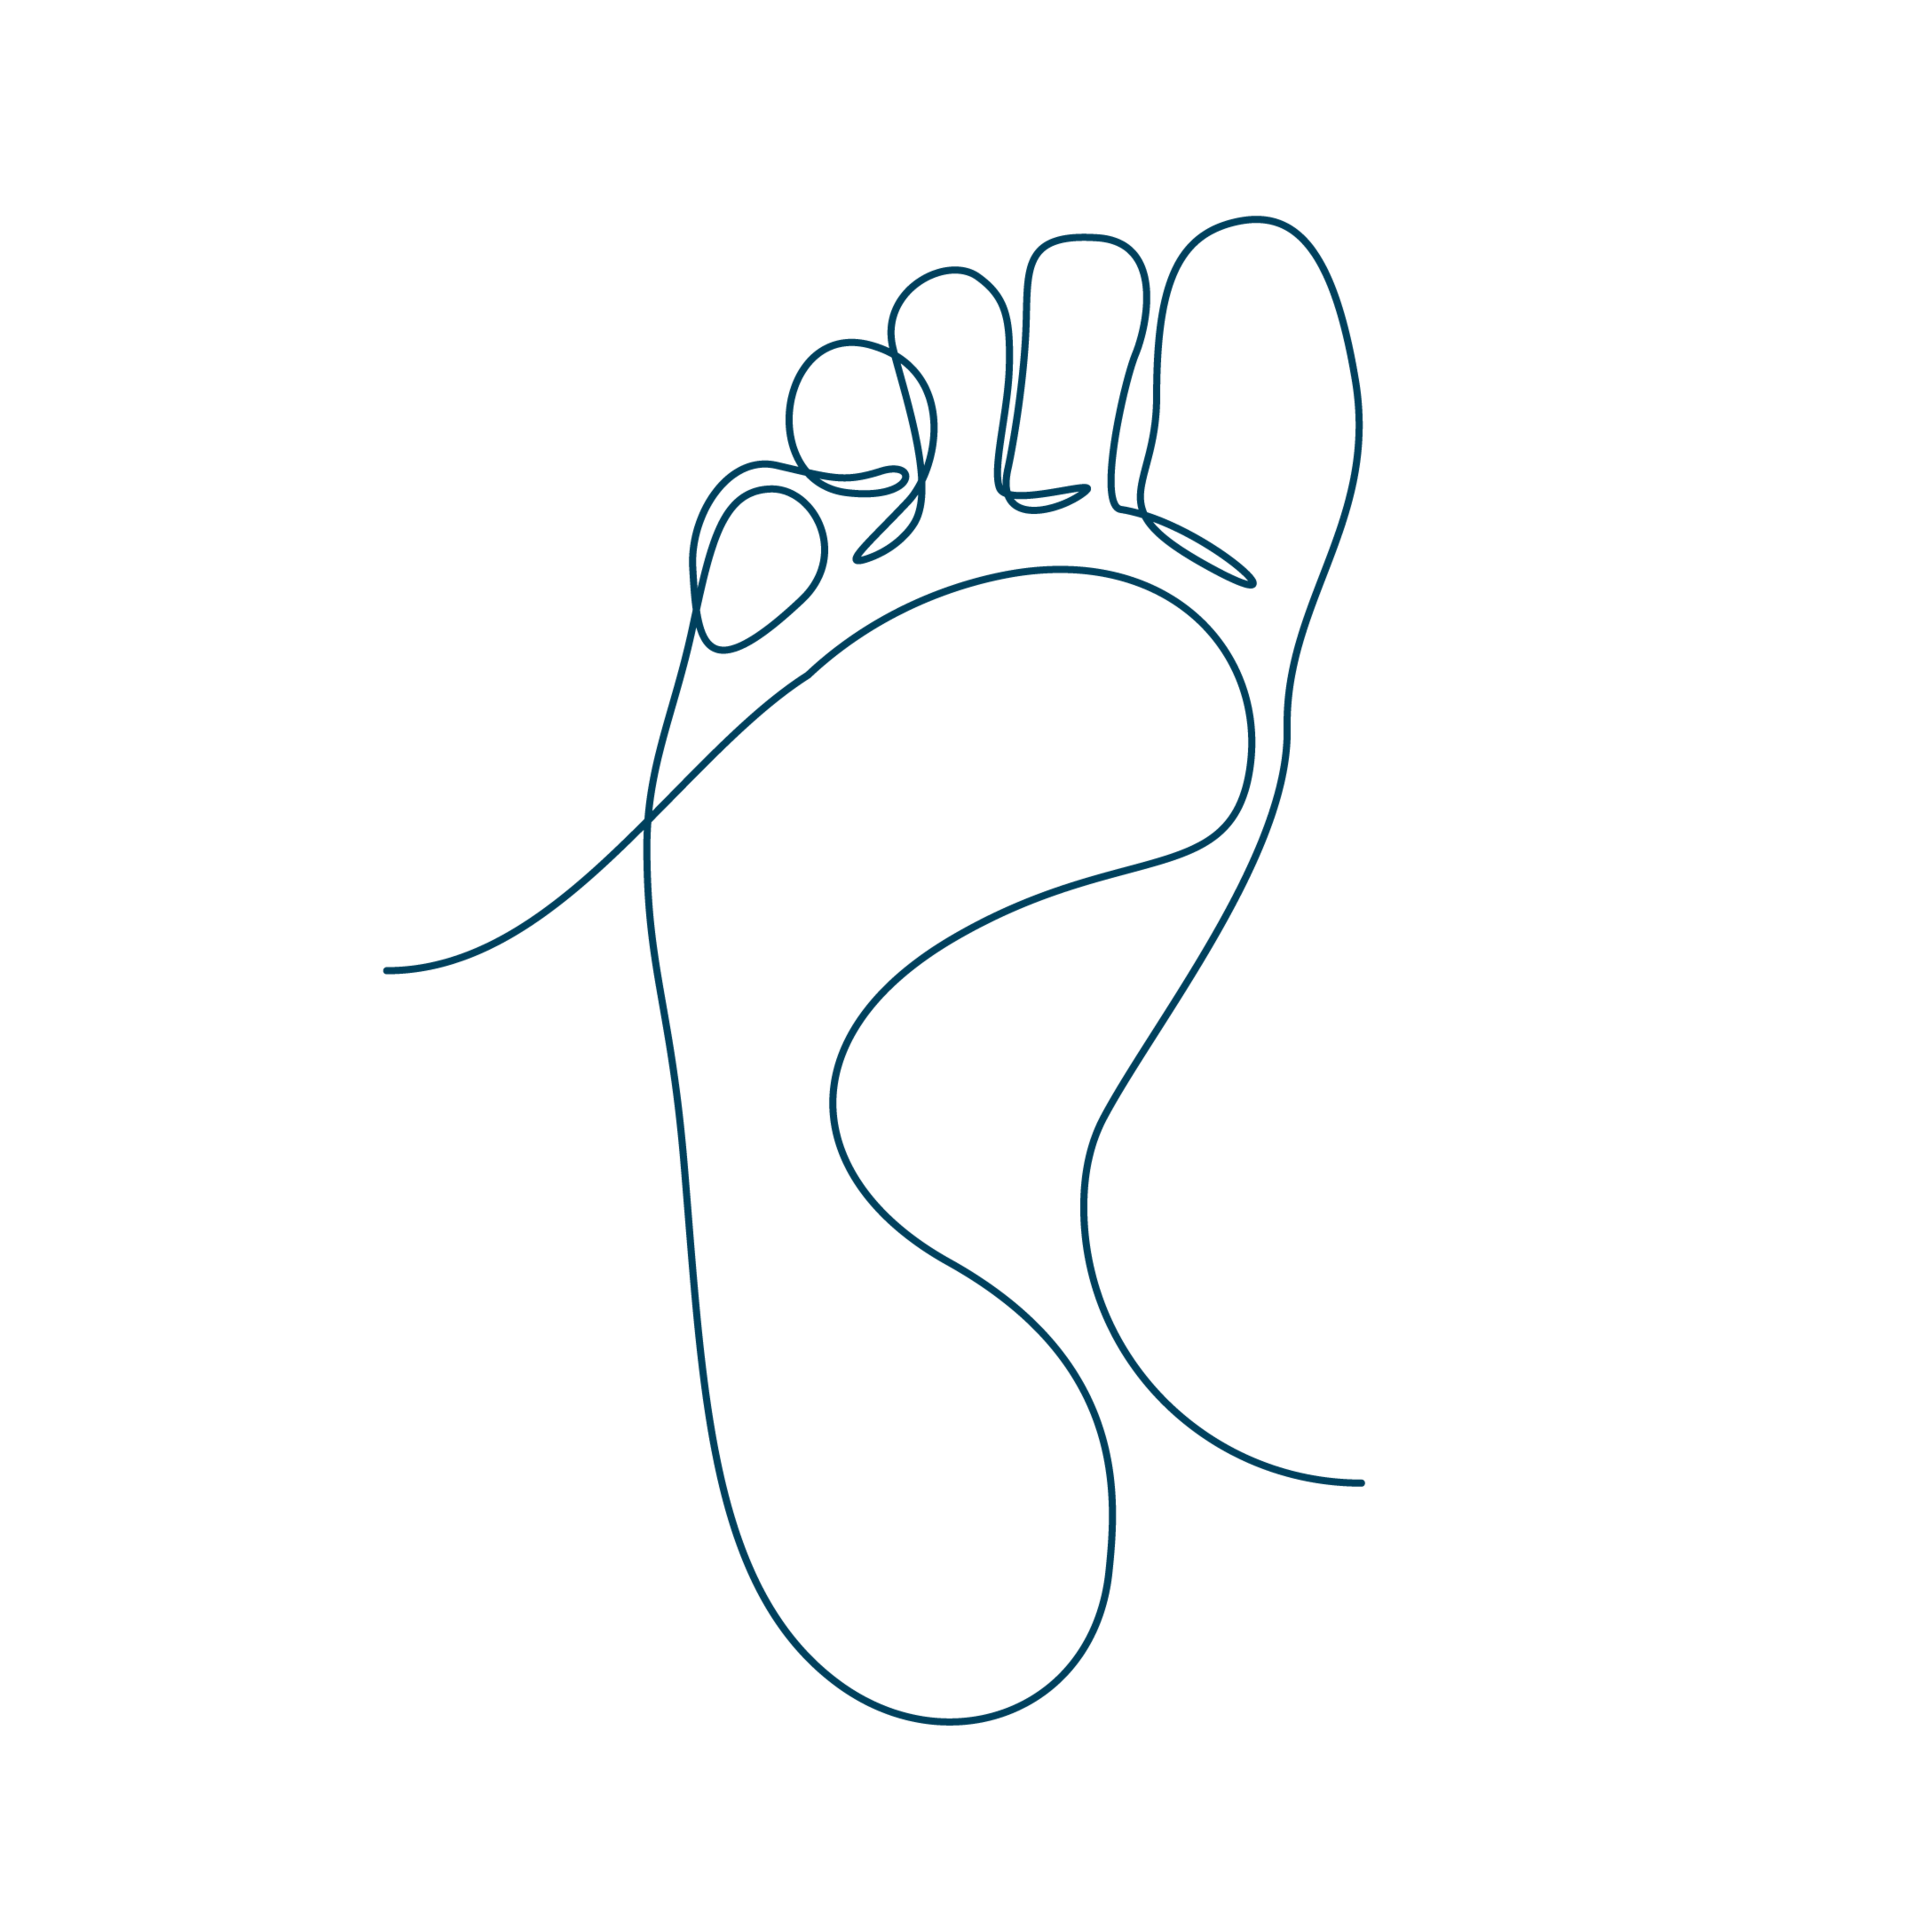 Diese Line-Art-Zeichnung einer Fußsohle bildet den Link zur Seite mit Fuß-Produkten.